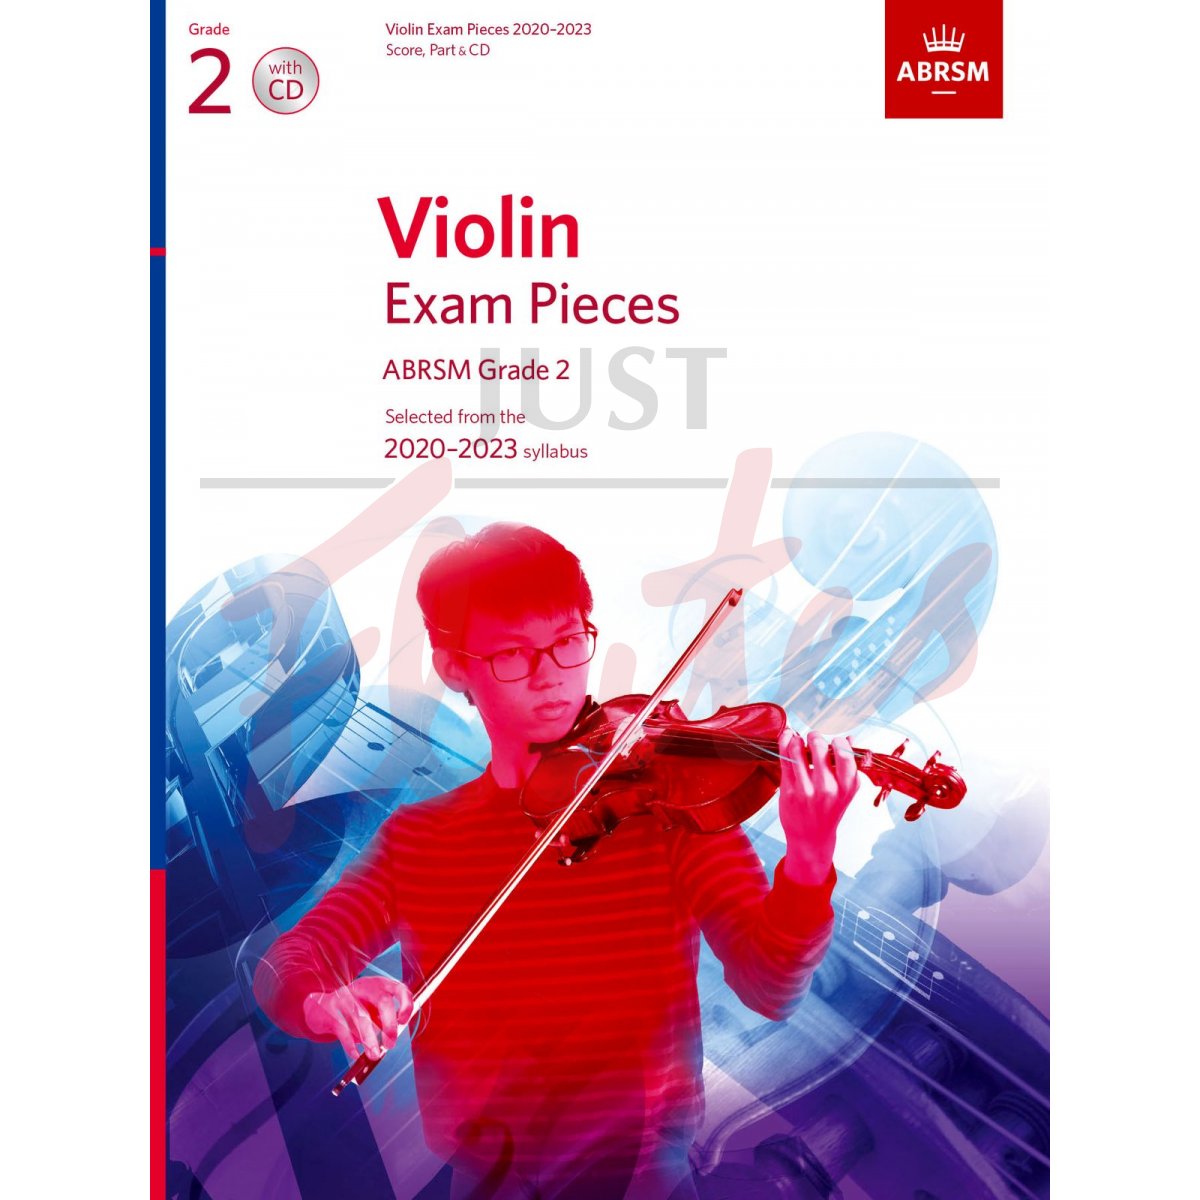 Violin Exam Pieces 2020-2023, Grade 2